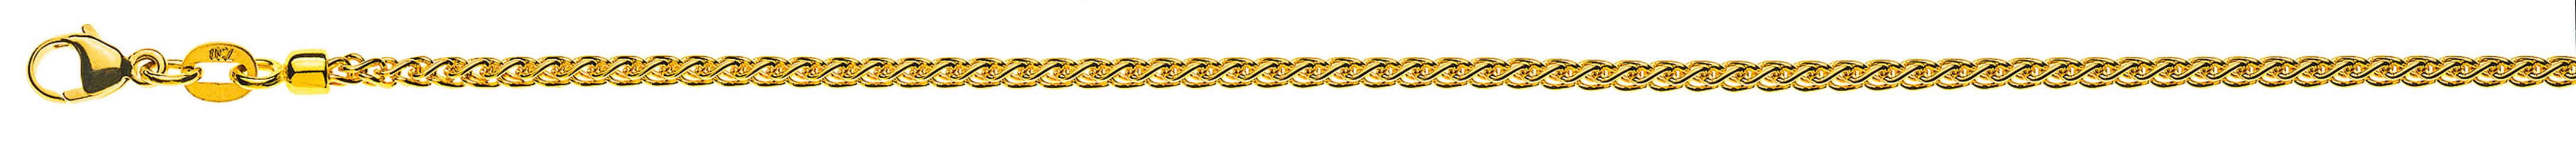 AURONOS Prestige Halskette Gelbgold 18K Zopfkette 45cm 2.15mm